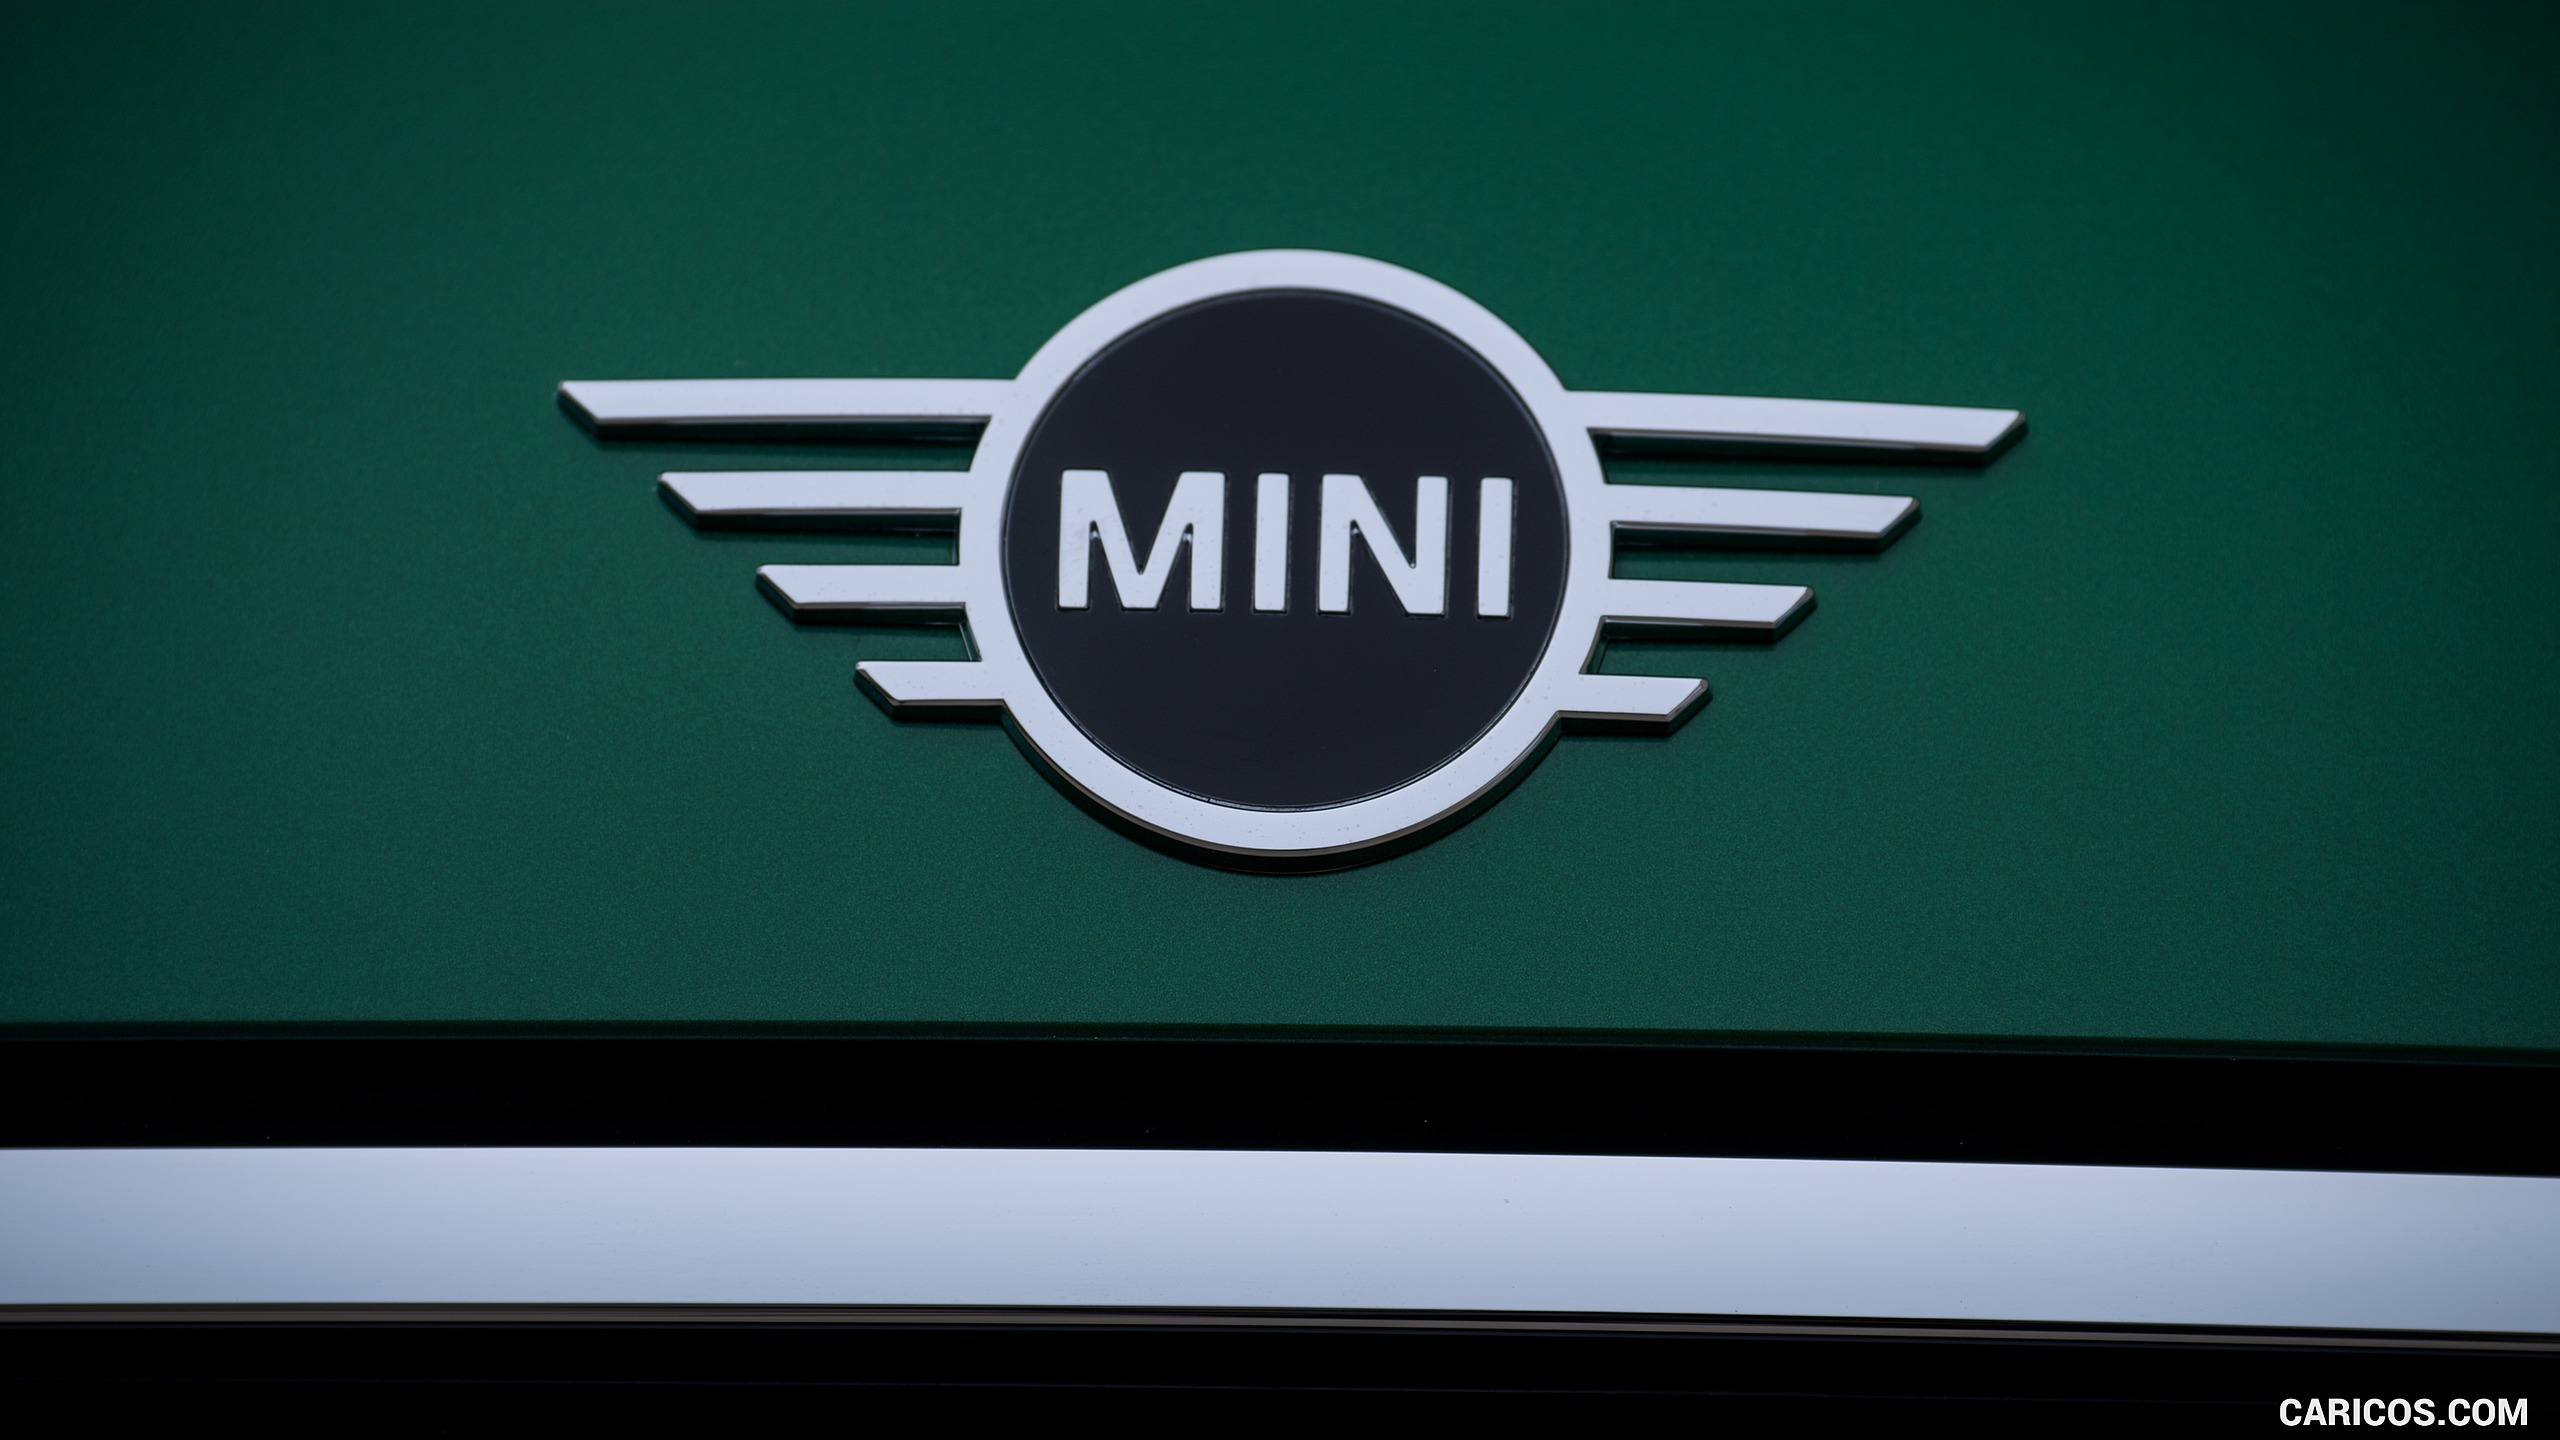 2019 MINI Cooper 3-Door 60 Years Edition - Badge, #58 of 102